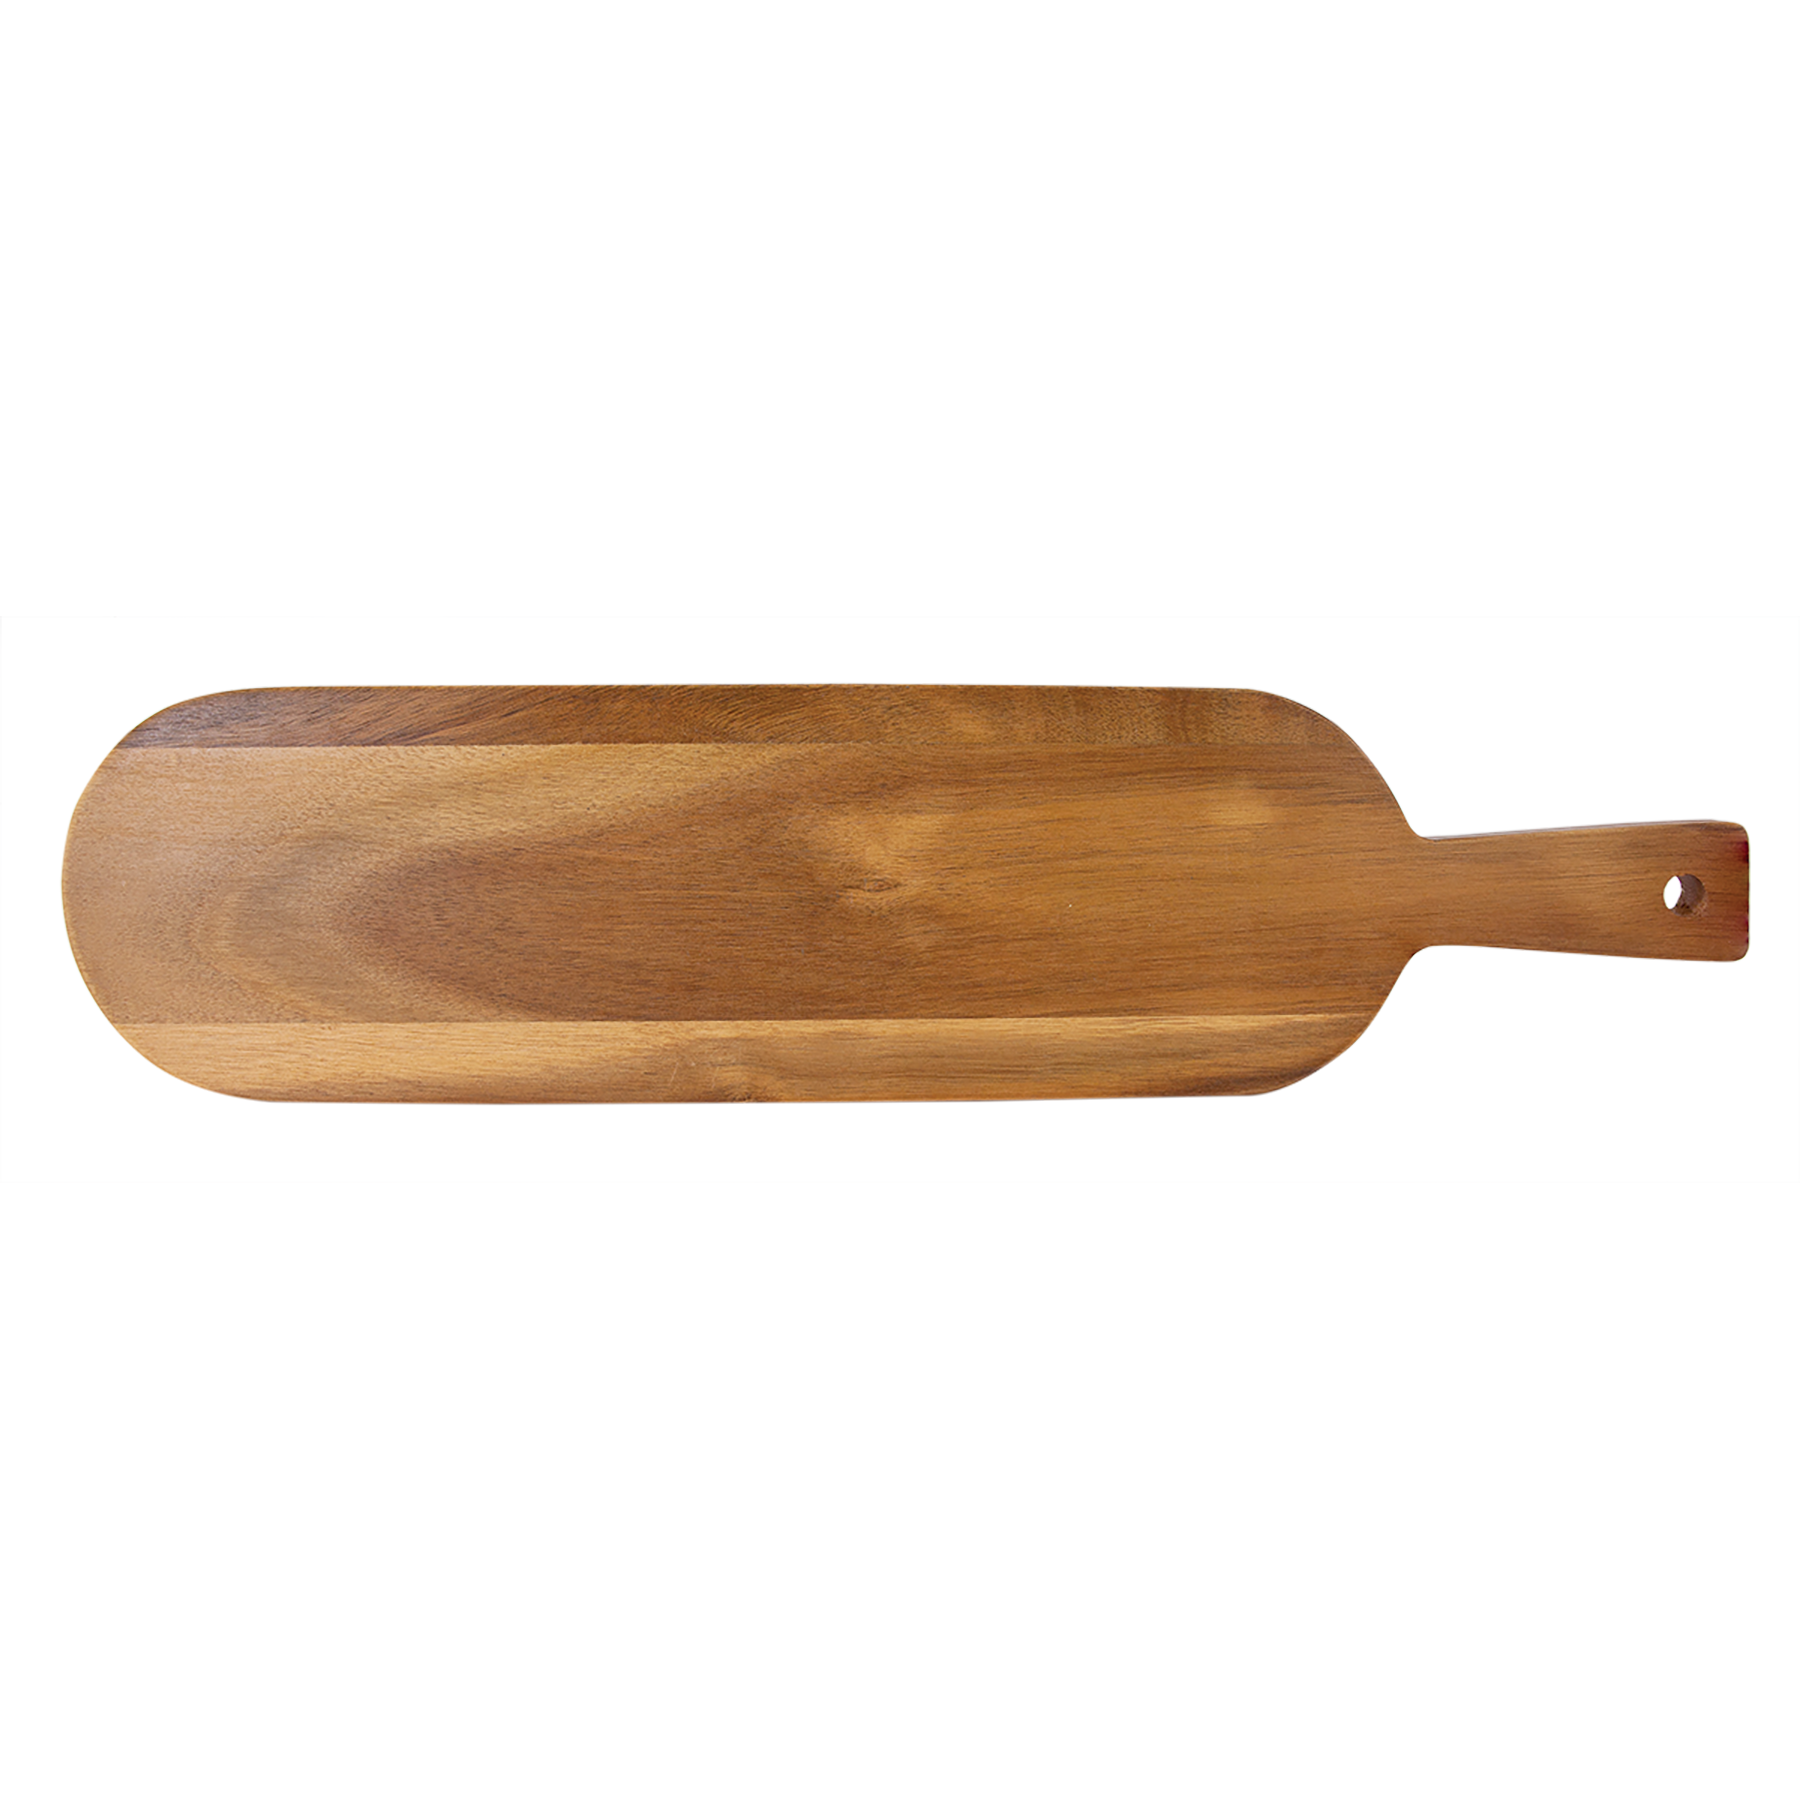 18 1/2" x 4 1/4" Acacia Wood/Slate Serving Board